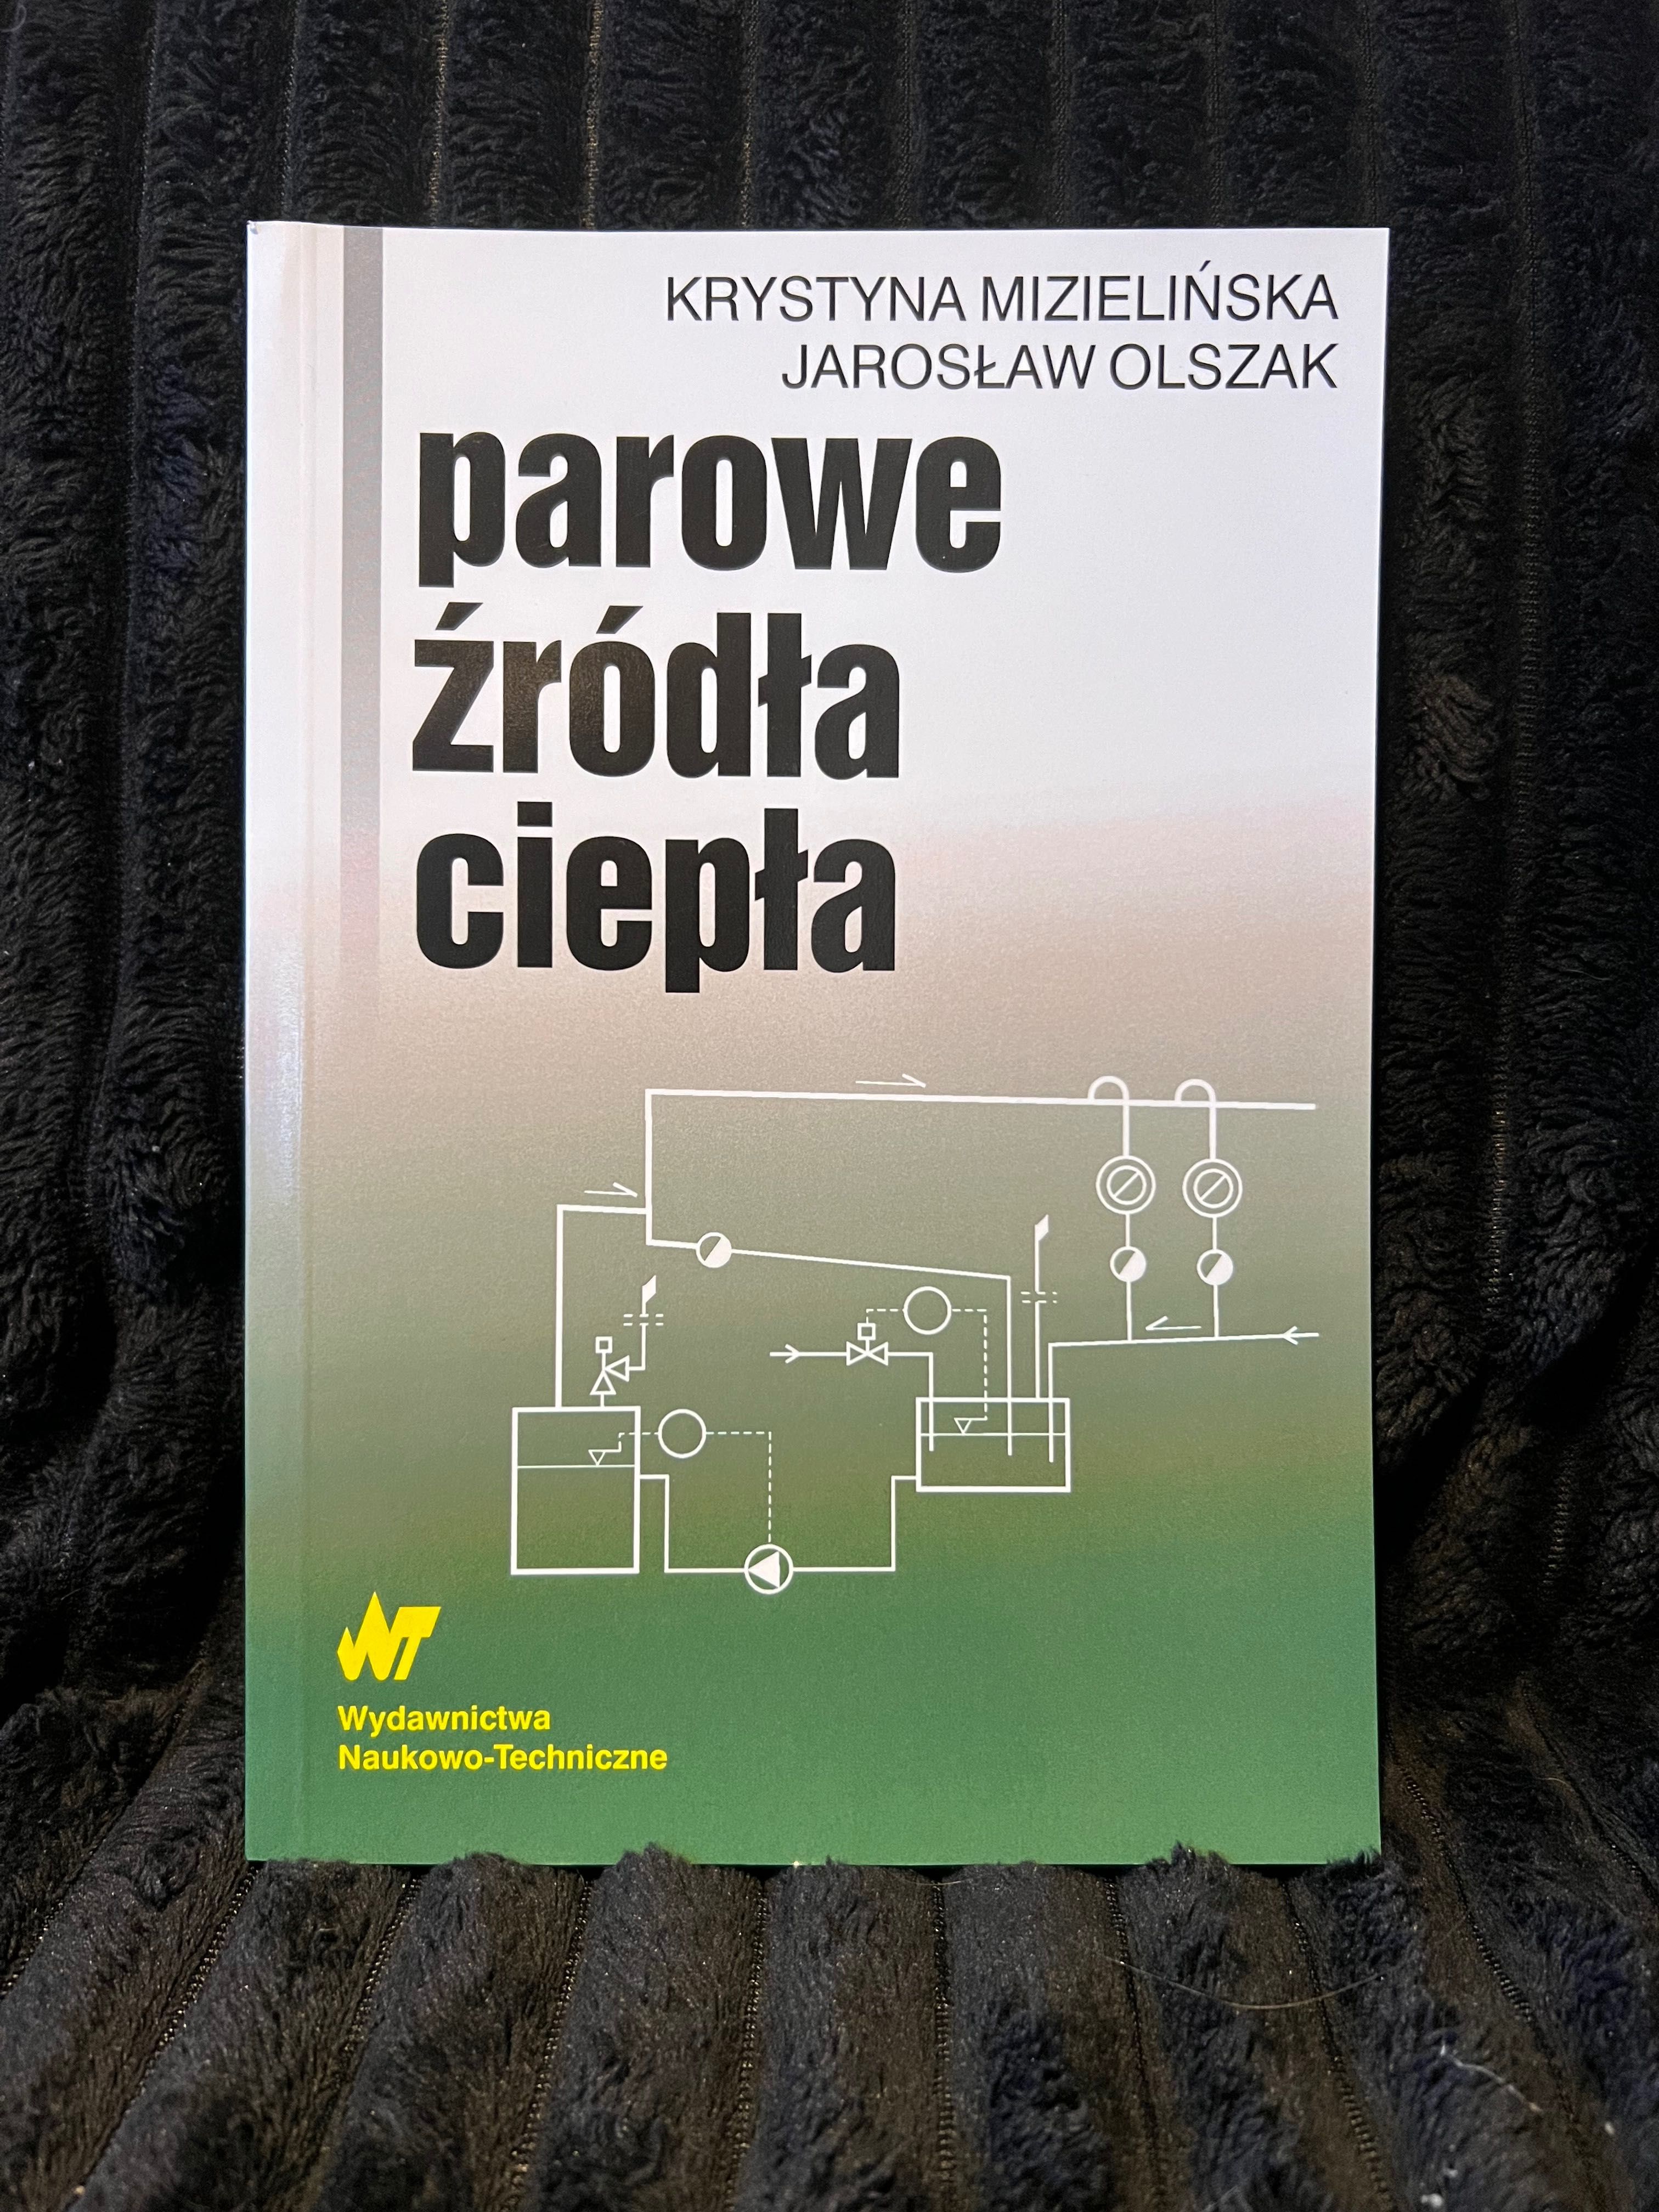 Parowe źródła ciepła - Mizielińska, Olszak - energetyka, książka